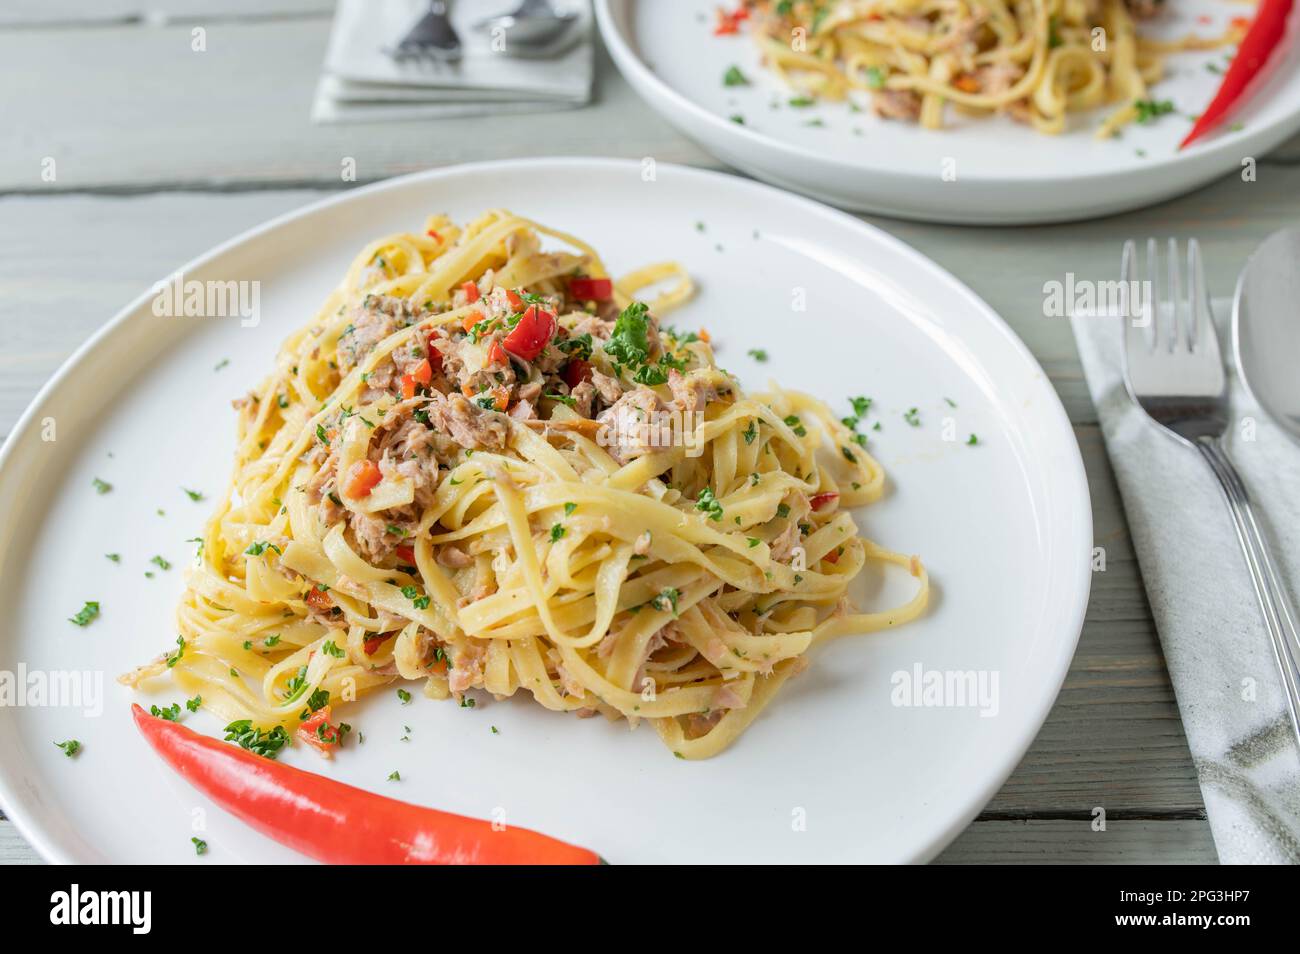 Pasta aglio e olio with tuna. Tagliatelle with olive oil, garlic, parsley and chili. Italian cuisine Stock Photo